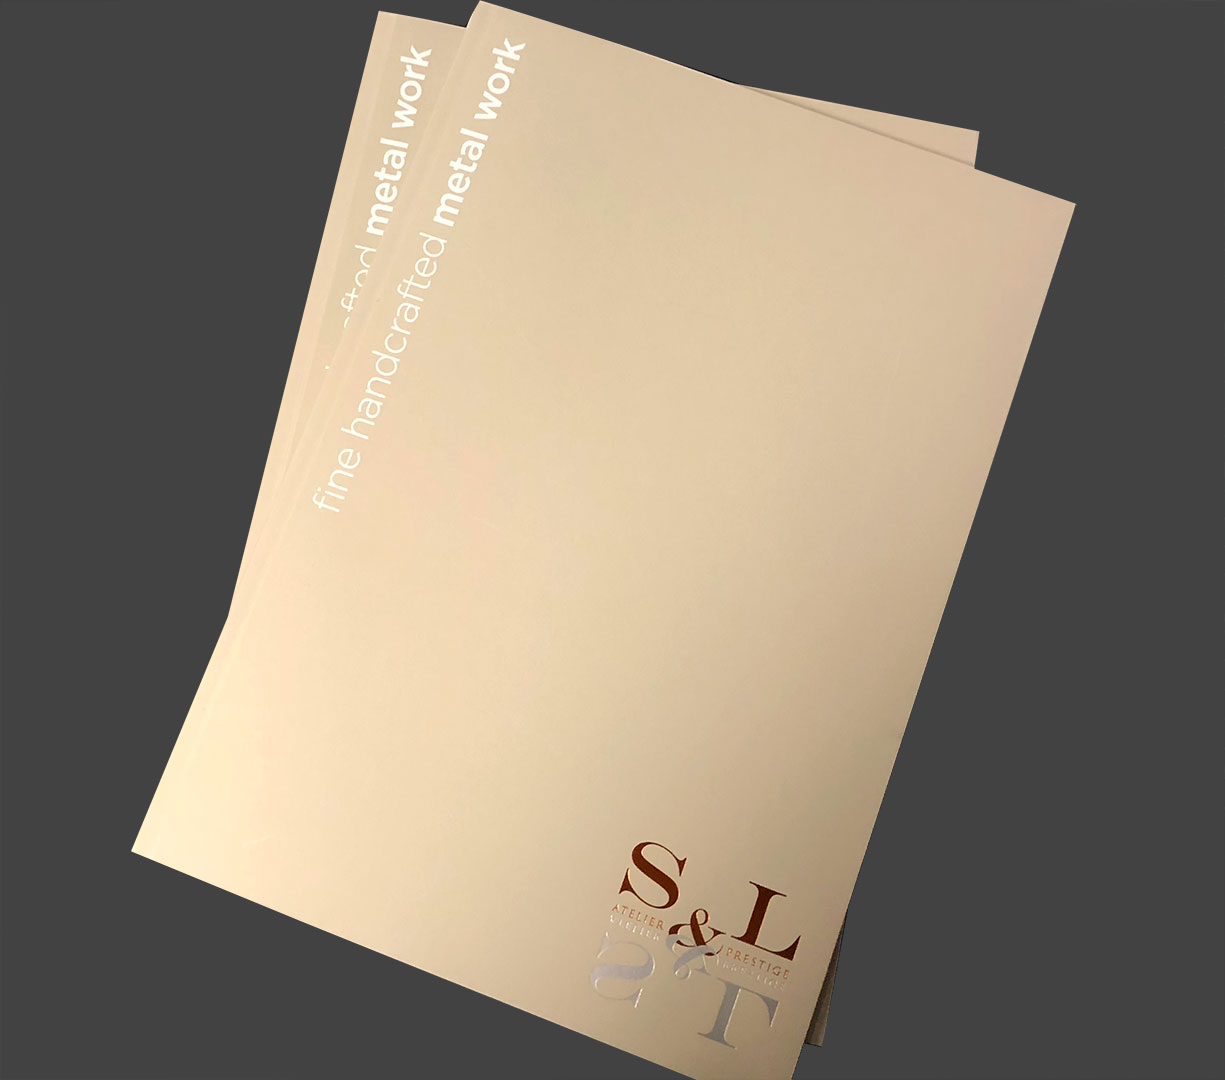 Atelier S&L  - Conception, création de la brochure S&L Prestige - 2